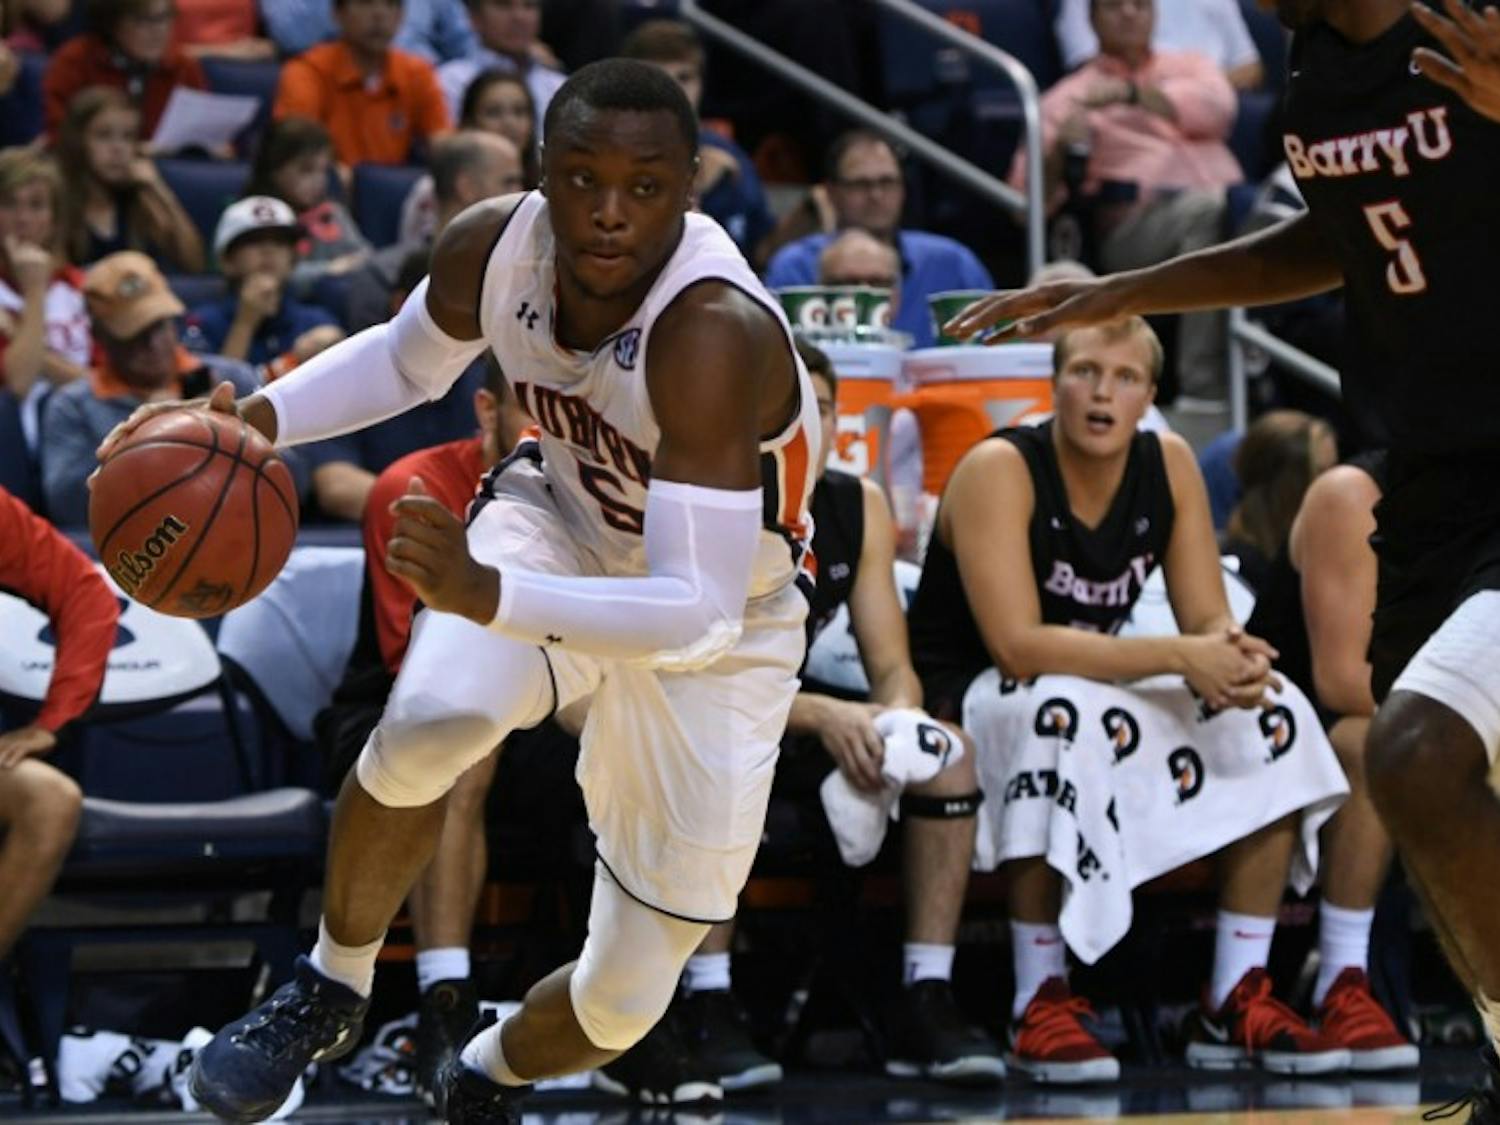 Auburn men's basketball player dribbling against Barry University